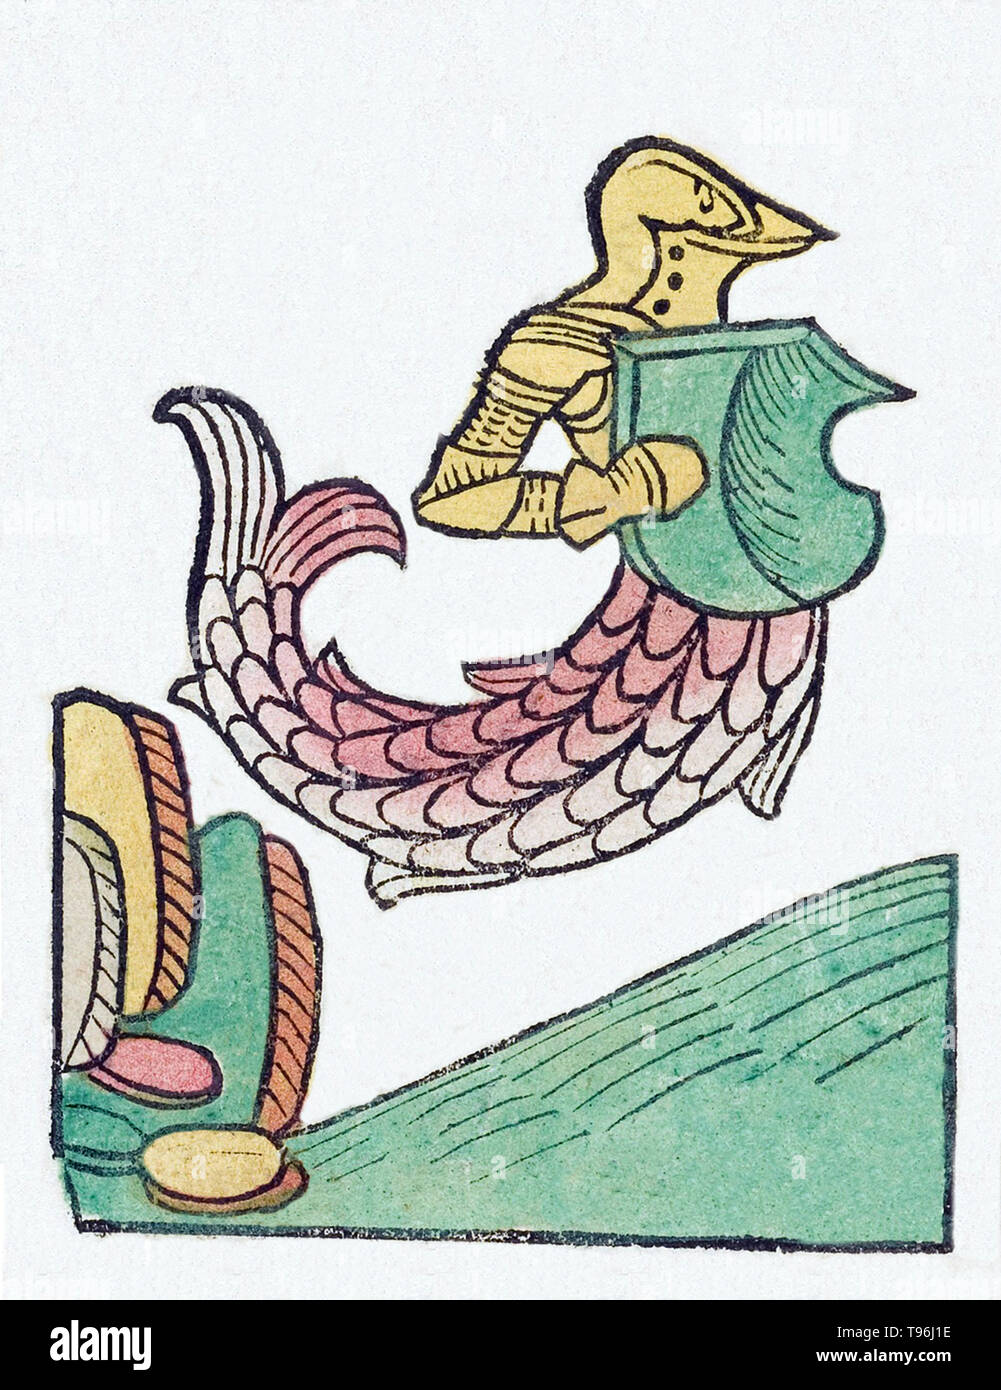 Un zitiron ou la mer, chevalier, est une créature mythologique qui a un haut du corps sous la forme d'un chevalier armé, fusionné avec la queue d'un poisson. L'Hortus Sanitatis (Jardin de la santé), la première encyclopédie d'histoire naturelle, a été publié par Jacob Meydenbach en Allemagne, 1491. Il décrit des plantes et animaux (à la fois réelle et mythique) avec minéraux et de divers métiers, avec leur valeur thérapeutique et de la méthode de préparation. La gravure sur bois à la main, les illustrations sont stylisées mais souvent facilement reconnaissable. L'édition 1547. Banque D'Images